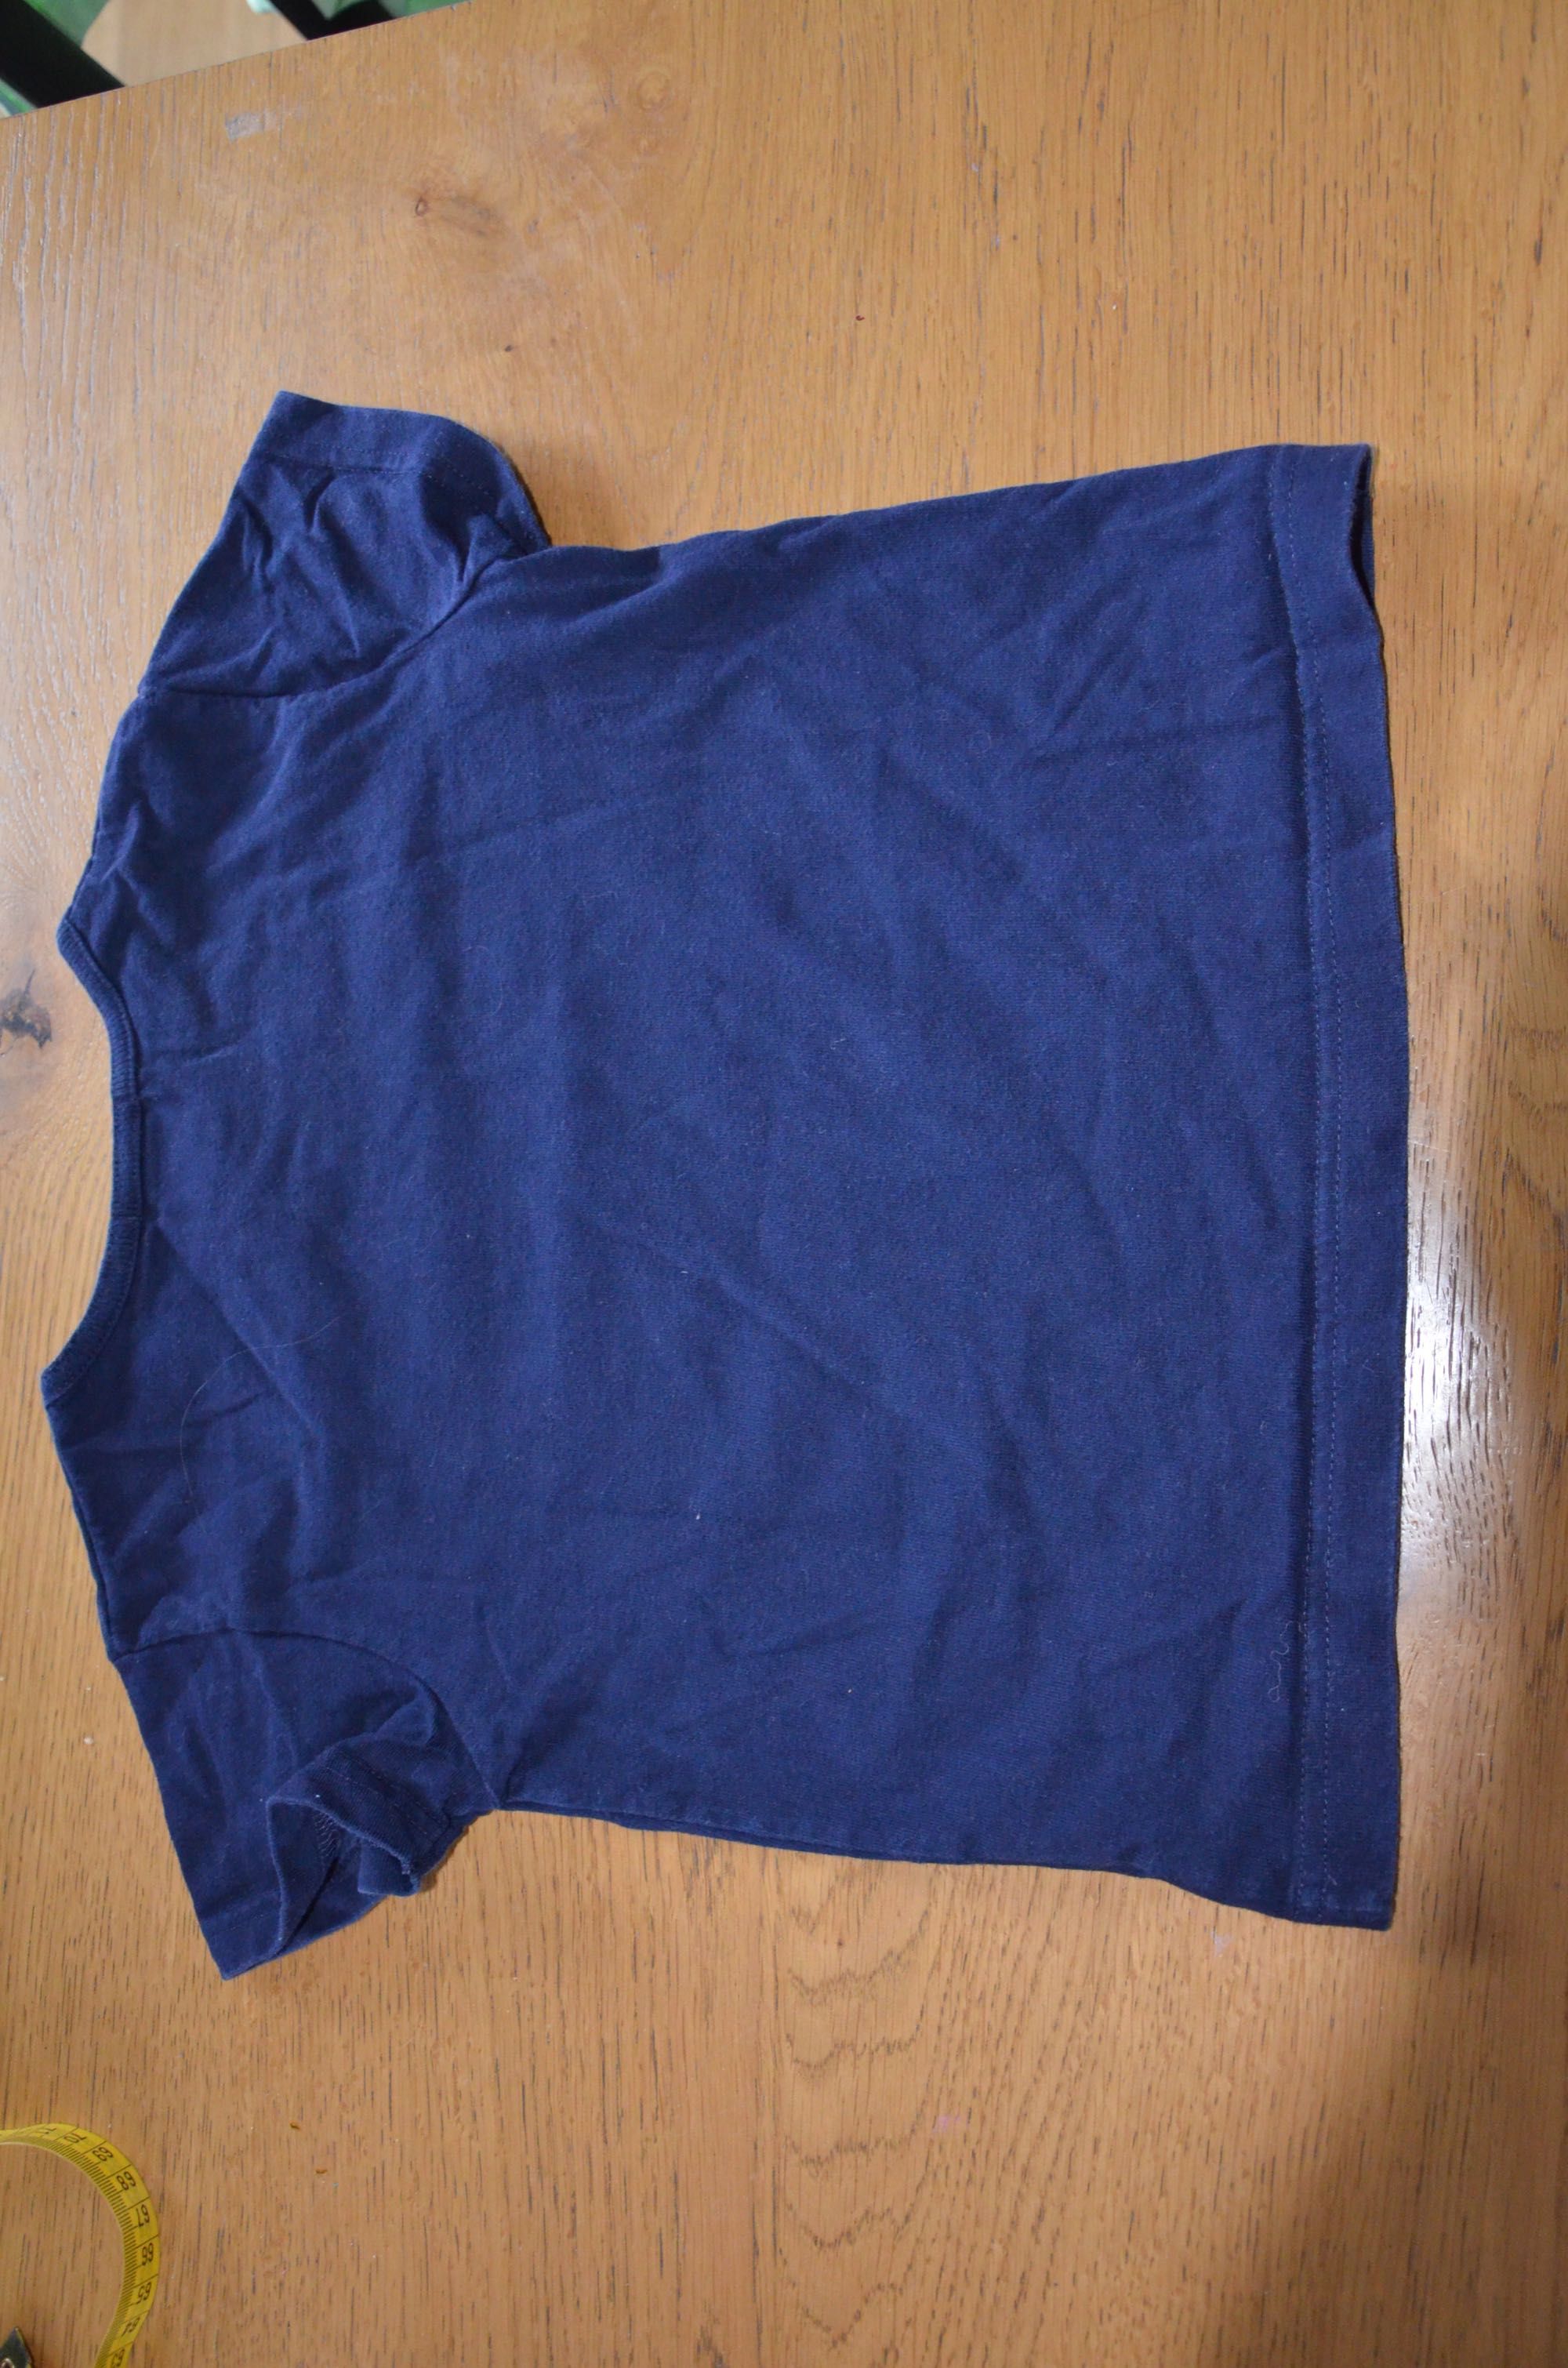 t-shirt Ralph Lauren 98-104- cm/4 lat granat